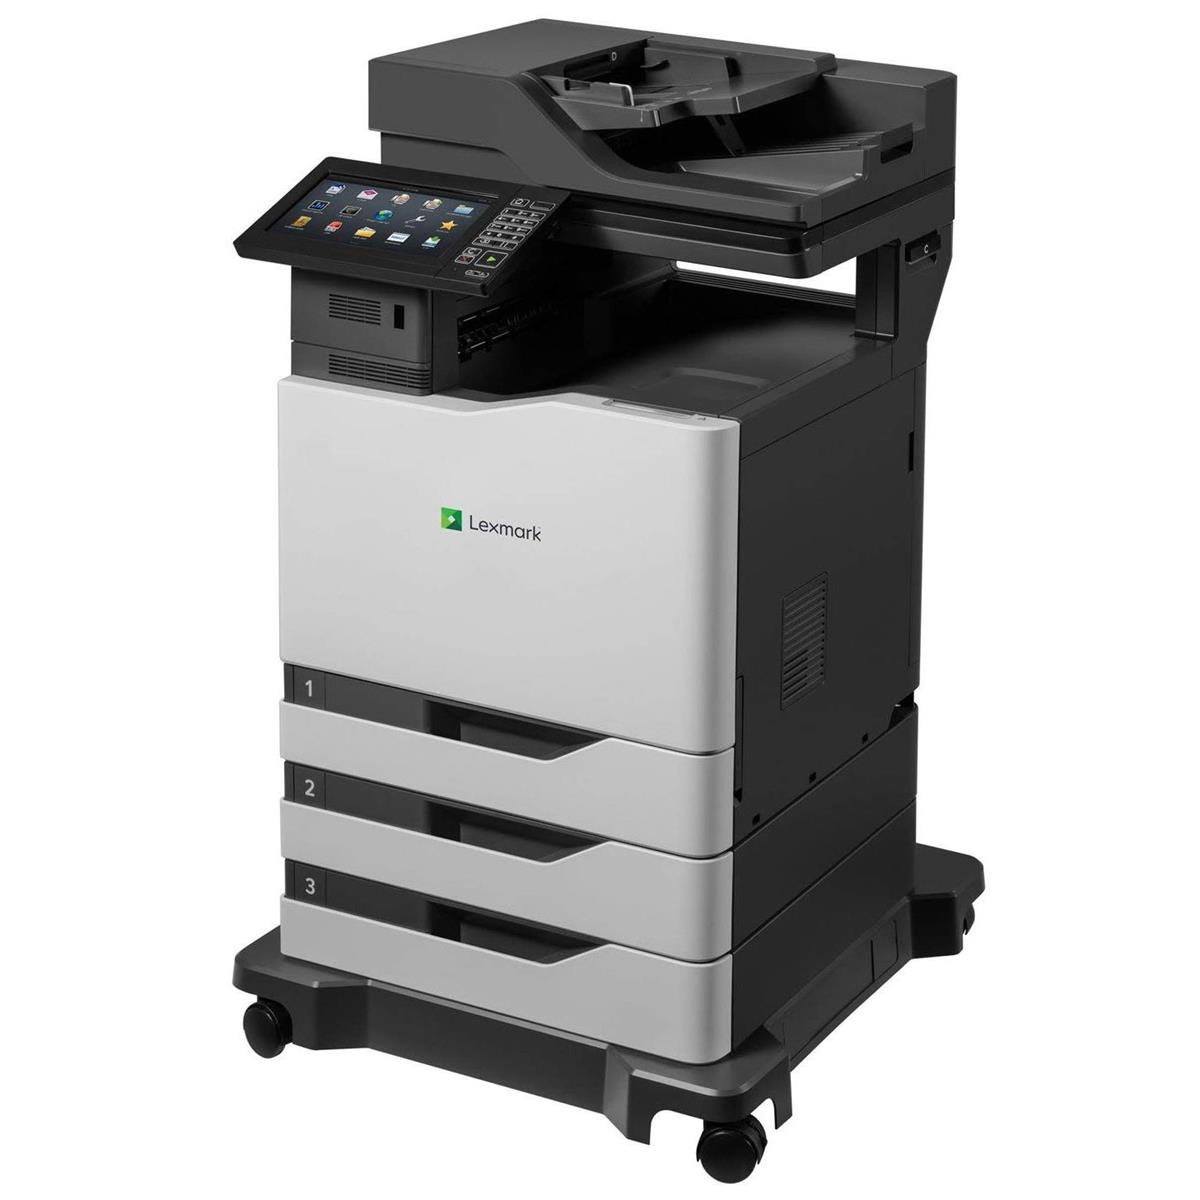 Image of Lexmark CX825dte Color Laser Multifunction Printer